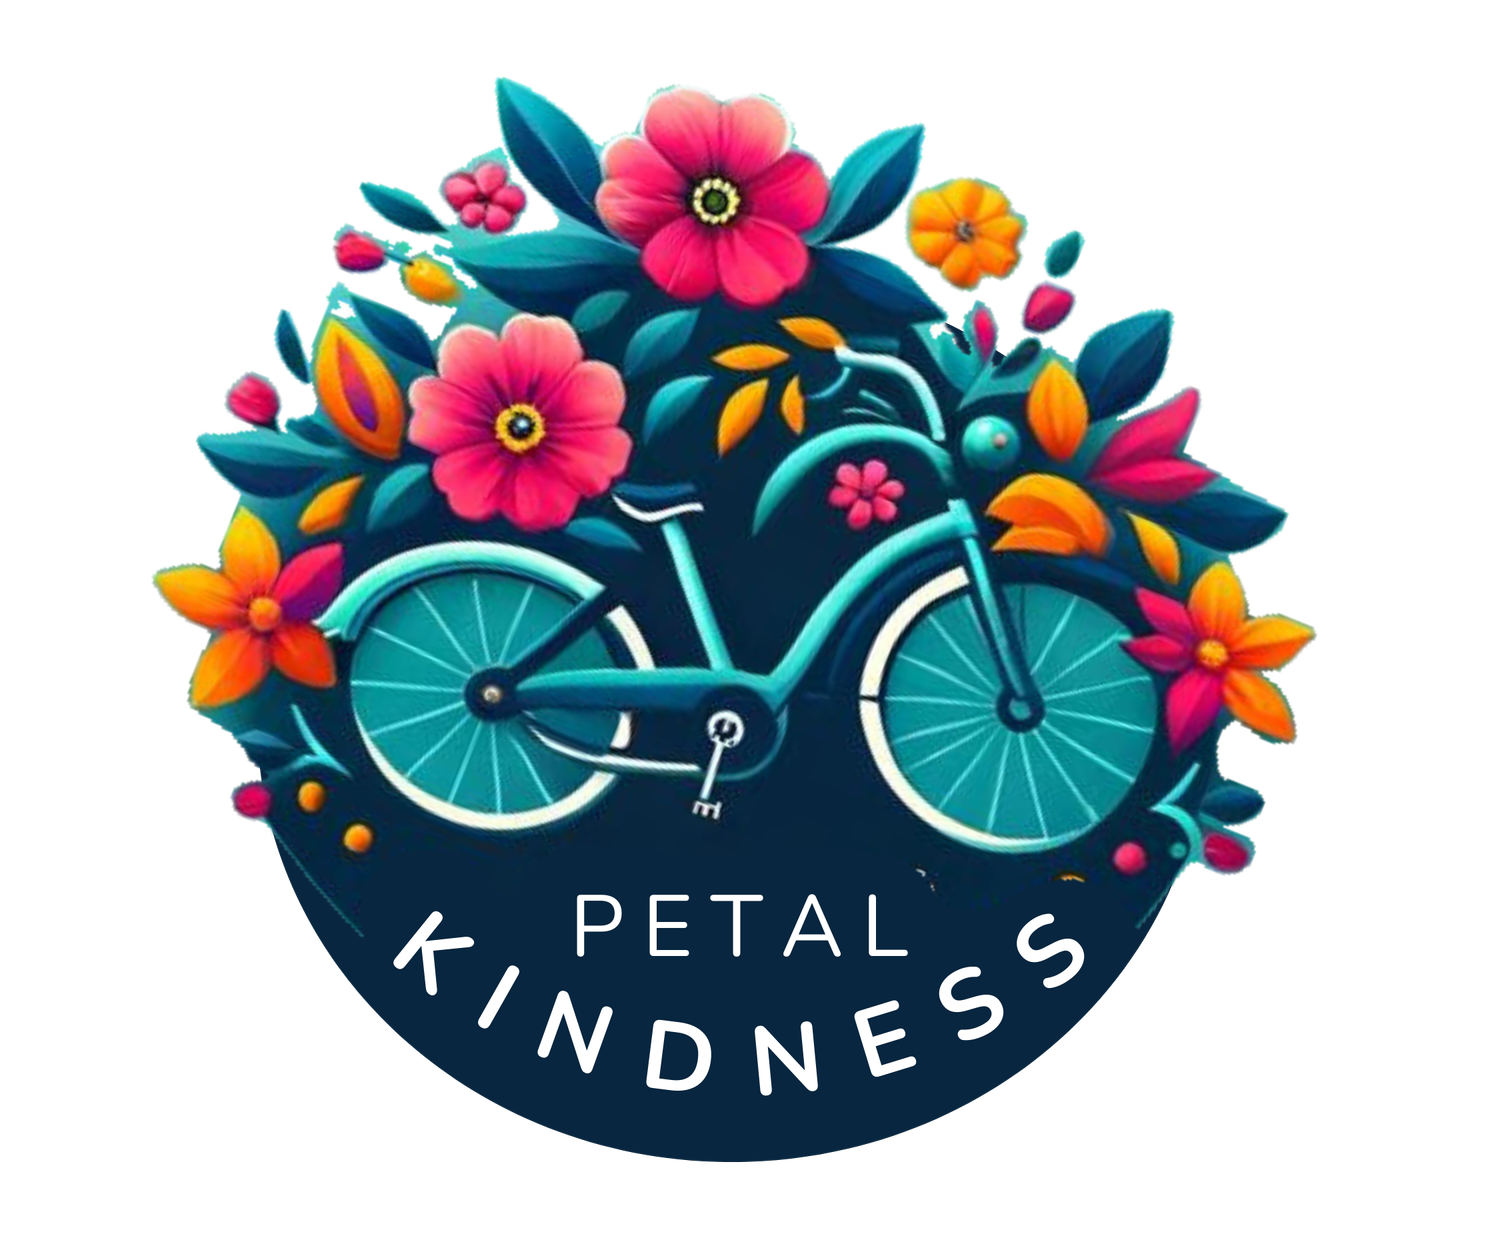 petalkindness.org